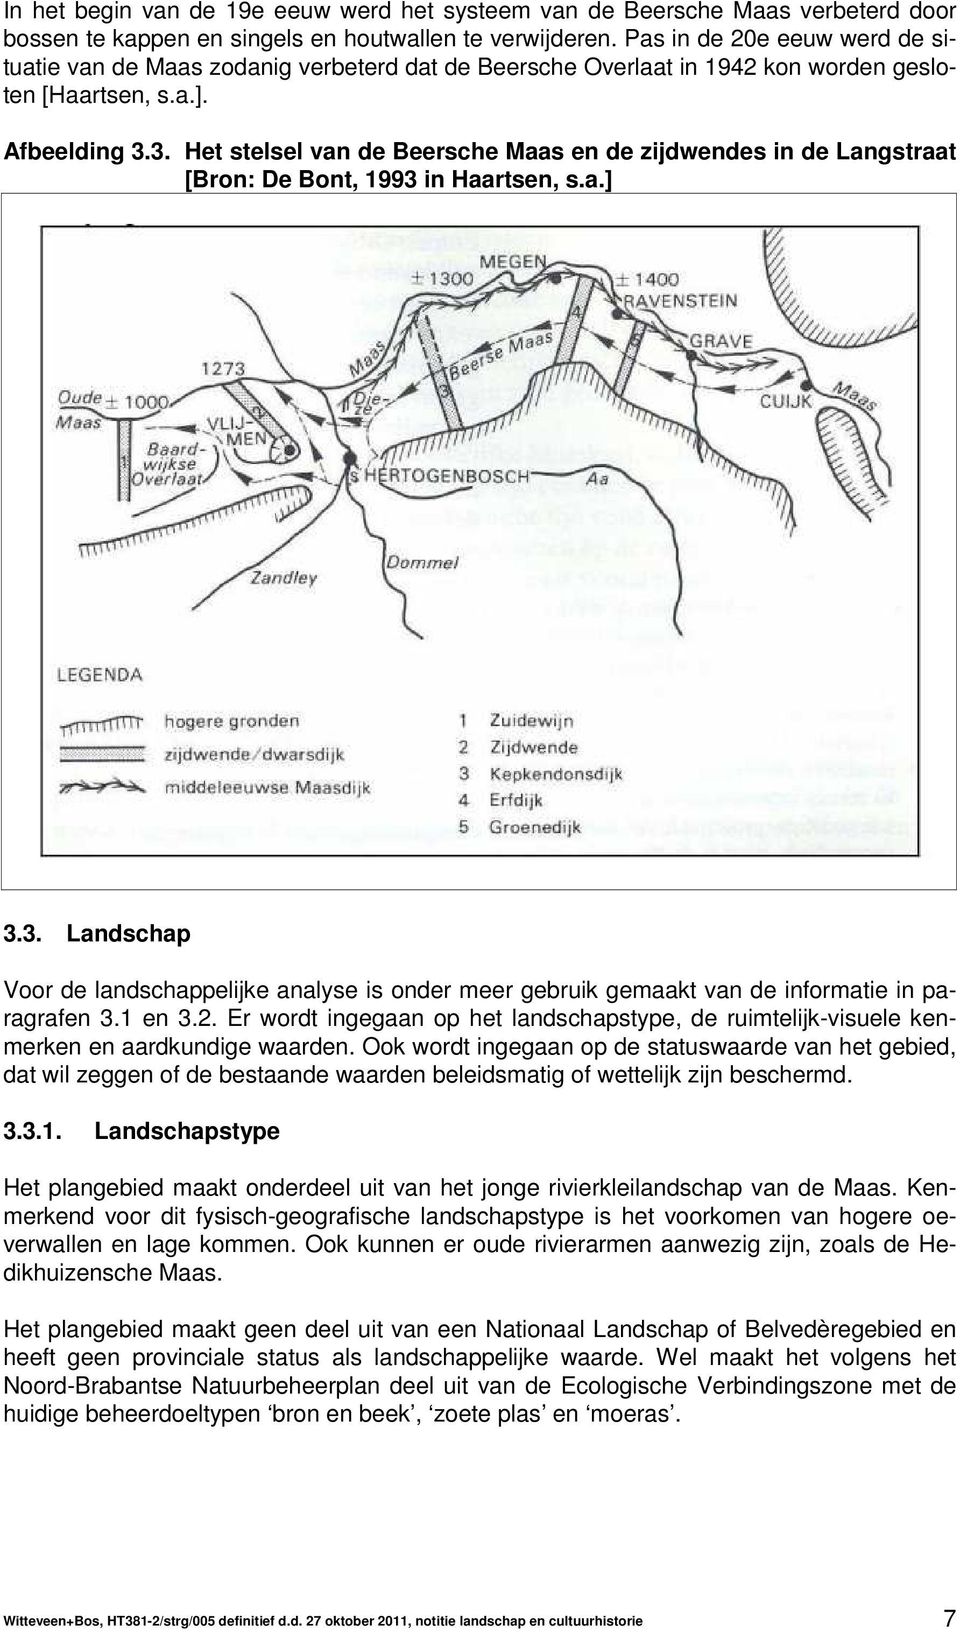 3. Het stelsel van de Beersche Maas en de zijdwendes in de Langstraat [Bron: De Bont, 1993 in Haartsen, s.a.] 3.3. Landschap Voor de landschappelijke analyse is onder meer gebruik gemaakt van de informatie in paragrafen 3.